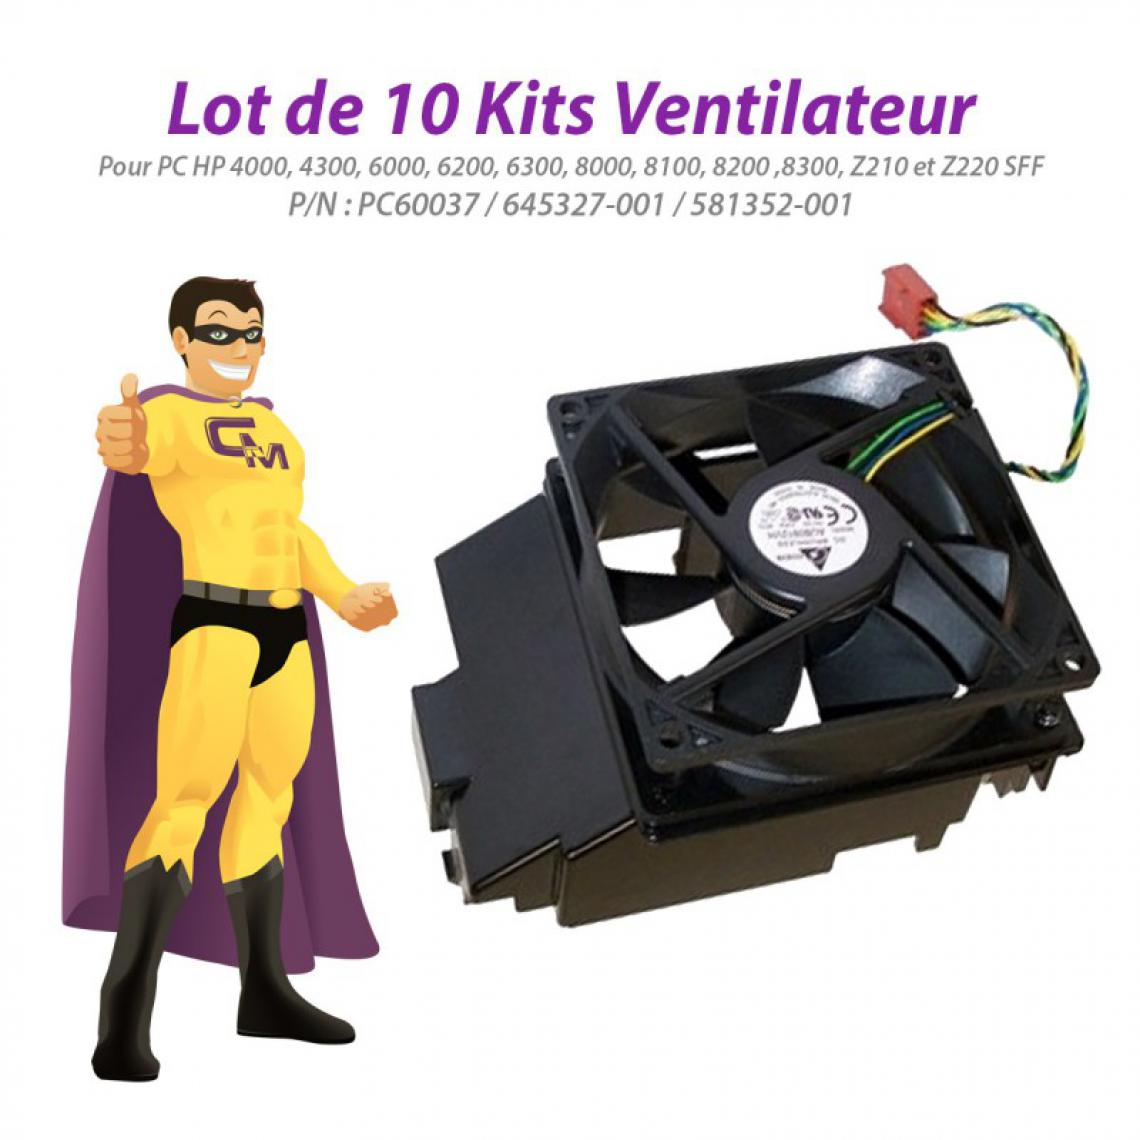 Hp - Lot x10 Kits Ventilateur HP 6200 6300 8200 8300 Z210 Z220 SFF PC60037 581352-001 - Ventilateur Pour Boîtier